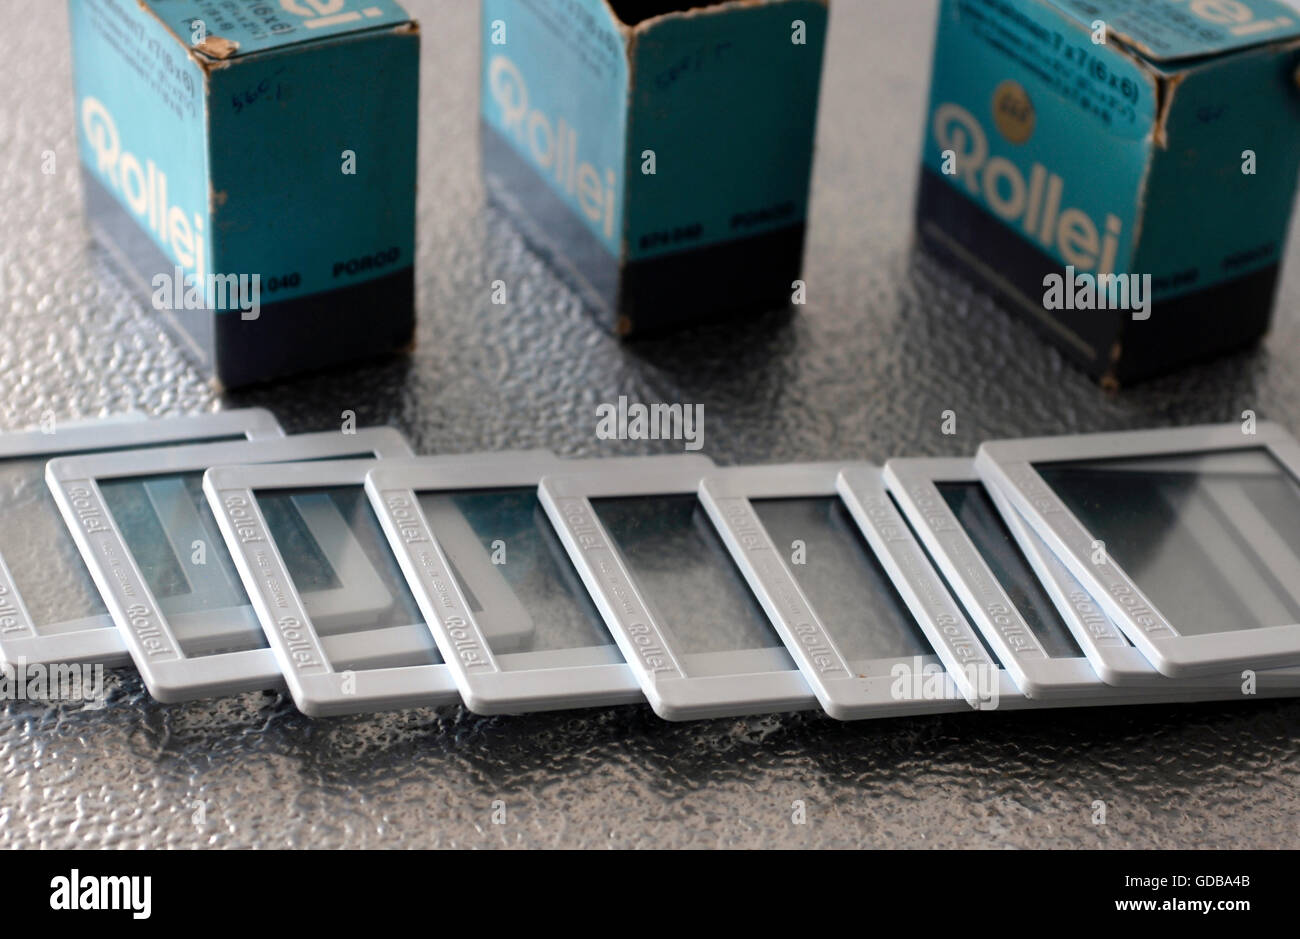 Boxen von Vintage Rahmen für Dias 35 mm Rollei, Made in Germany  Stockfotografie - Alamy